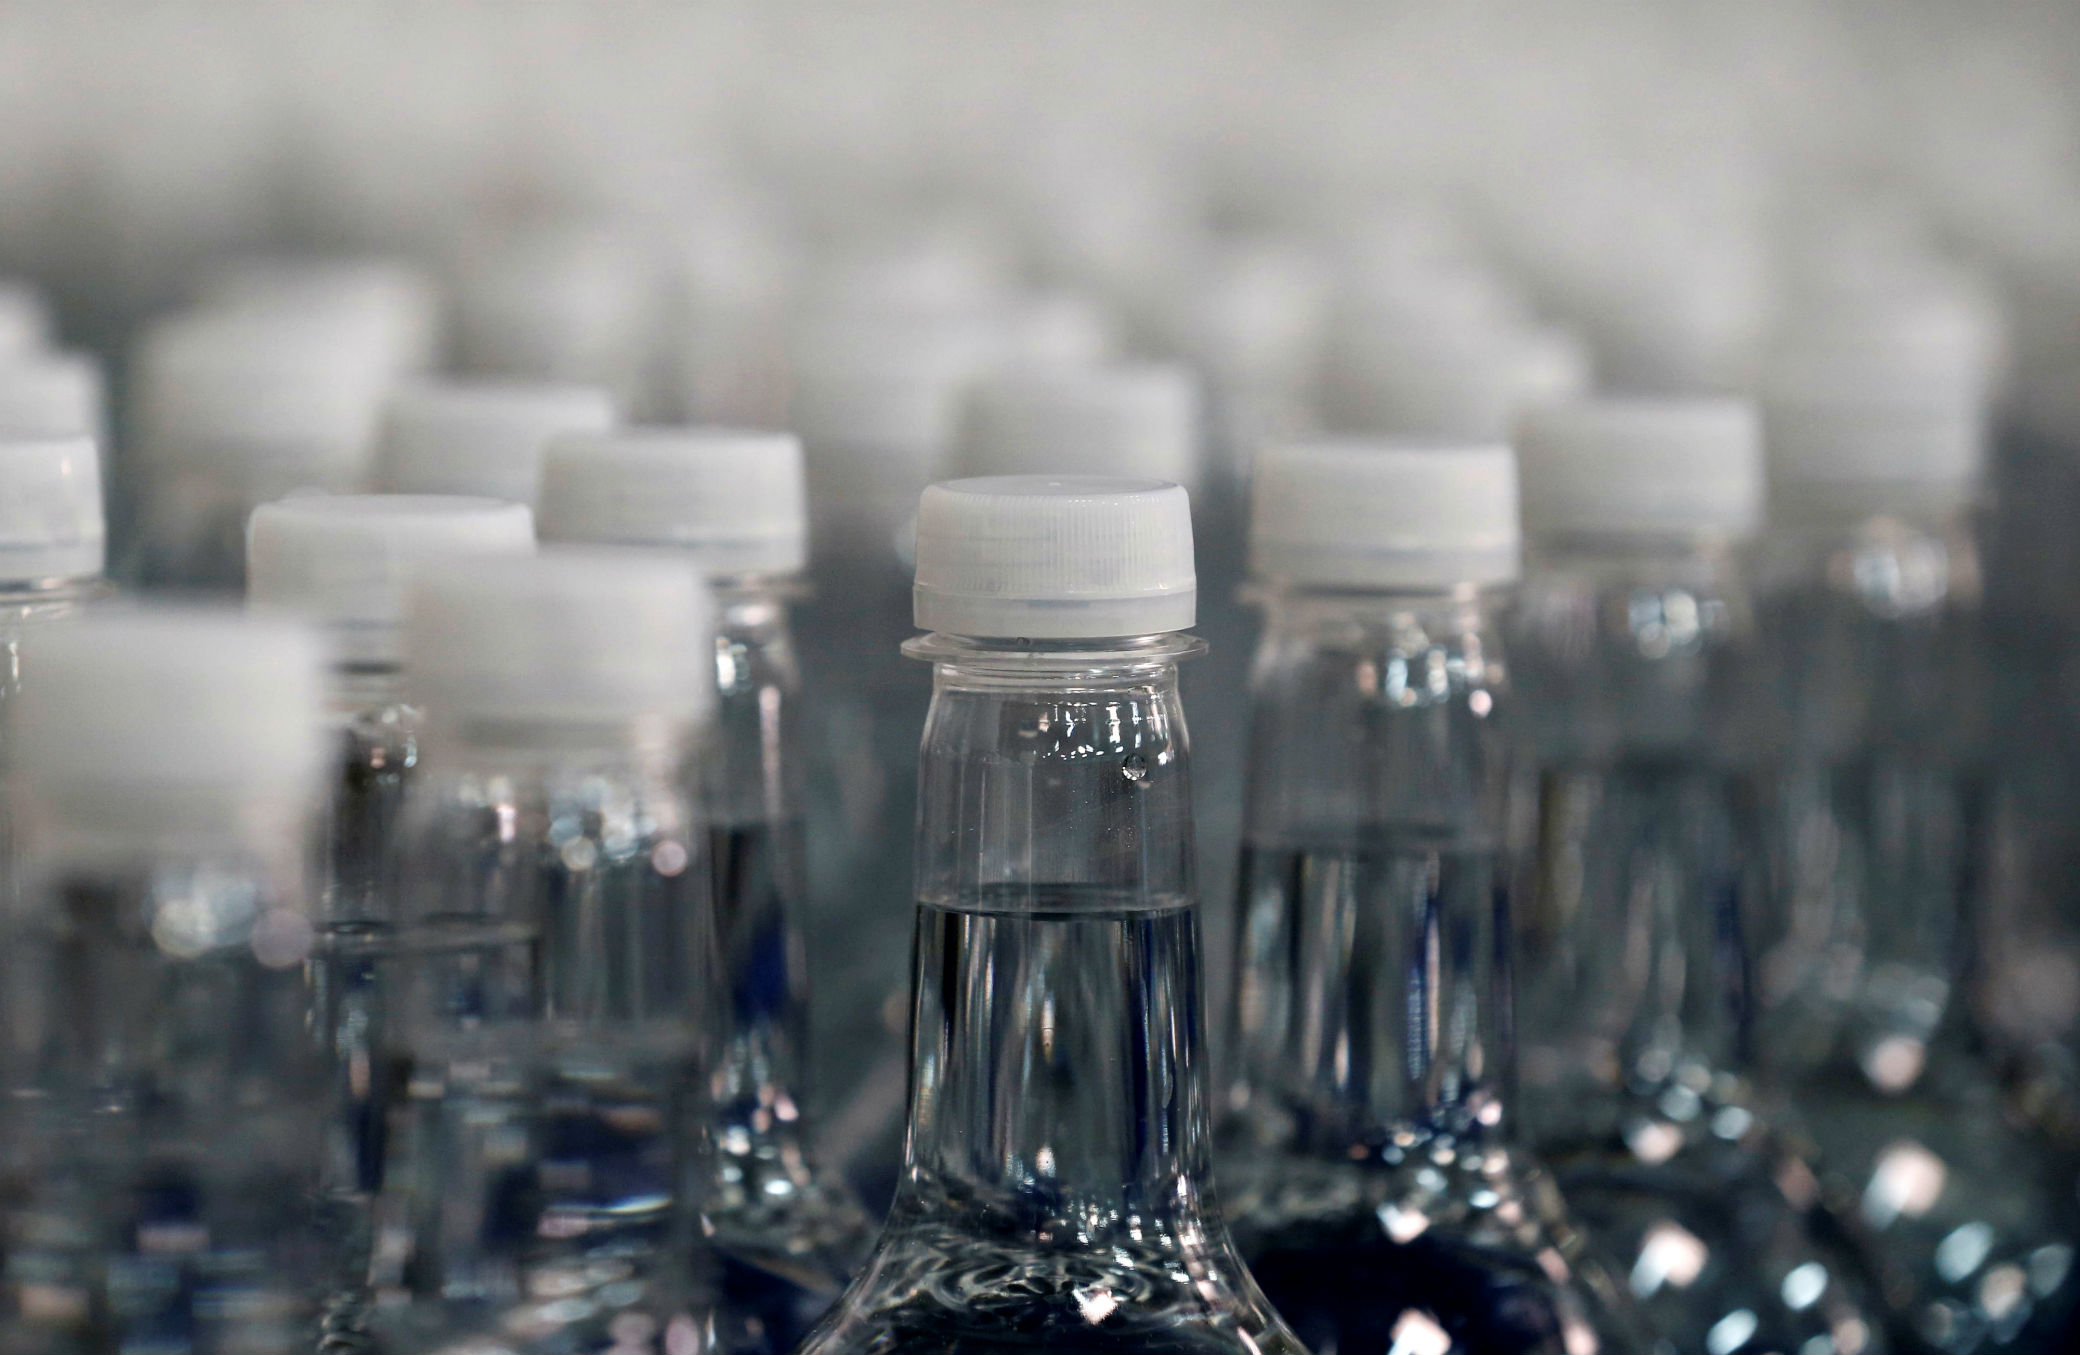 Plastique: Carbios parvient à produire des bouteilles à partir de déchets textiles